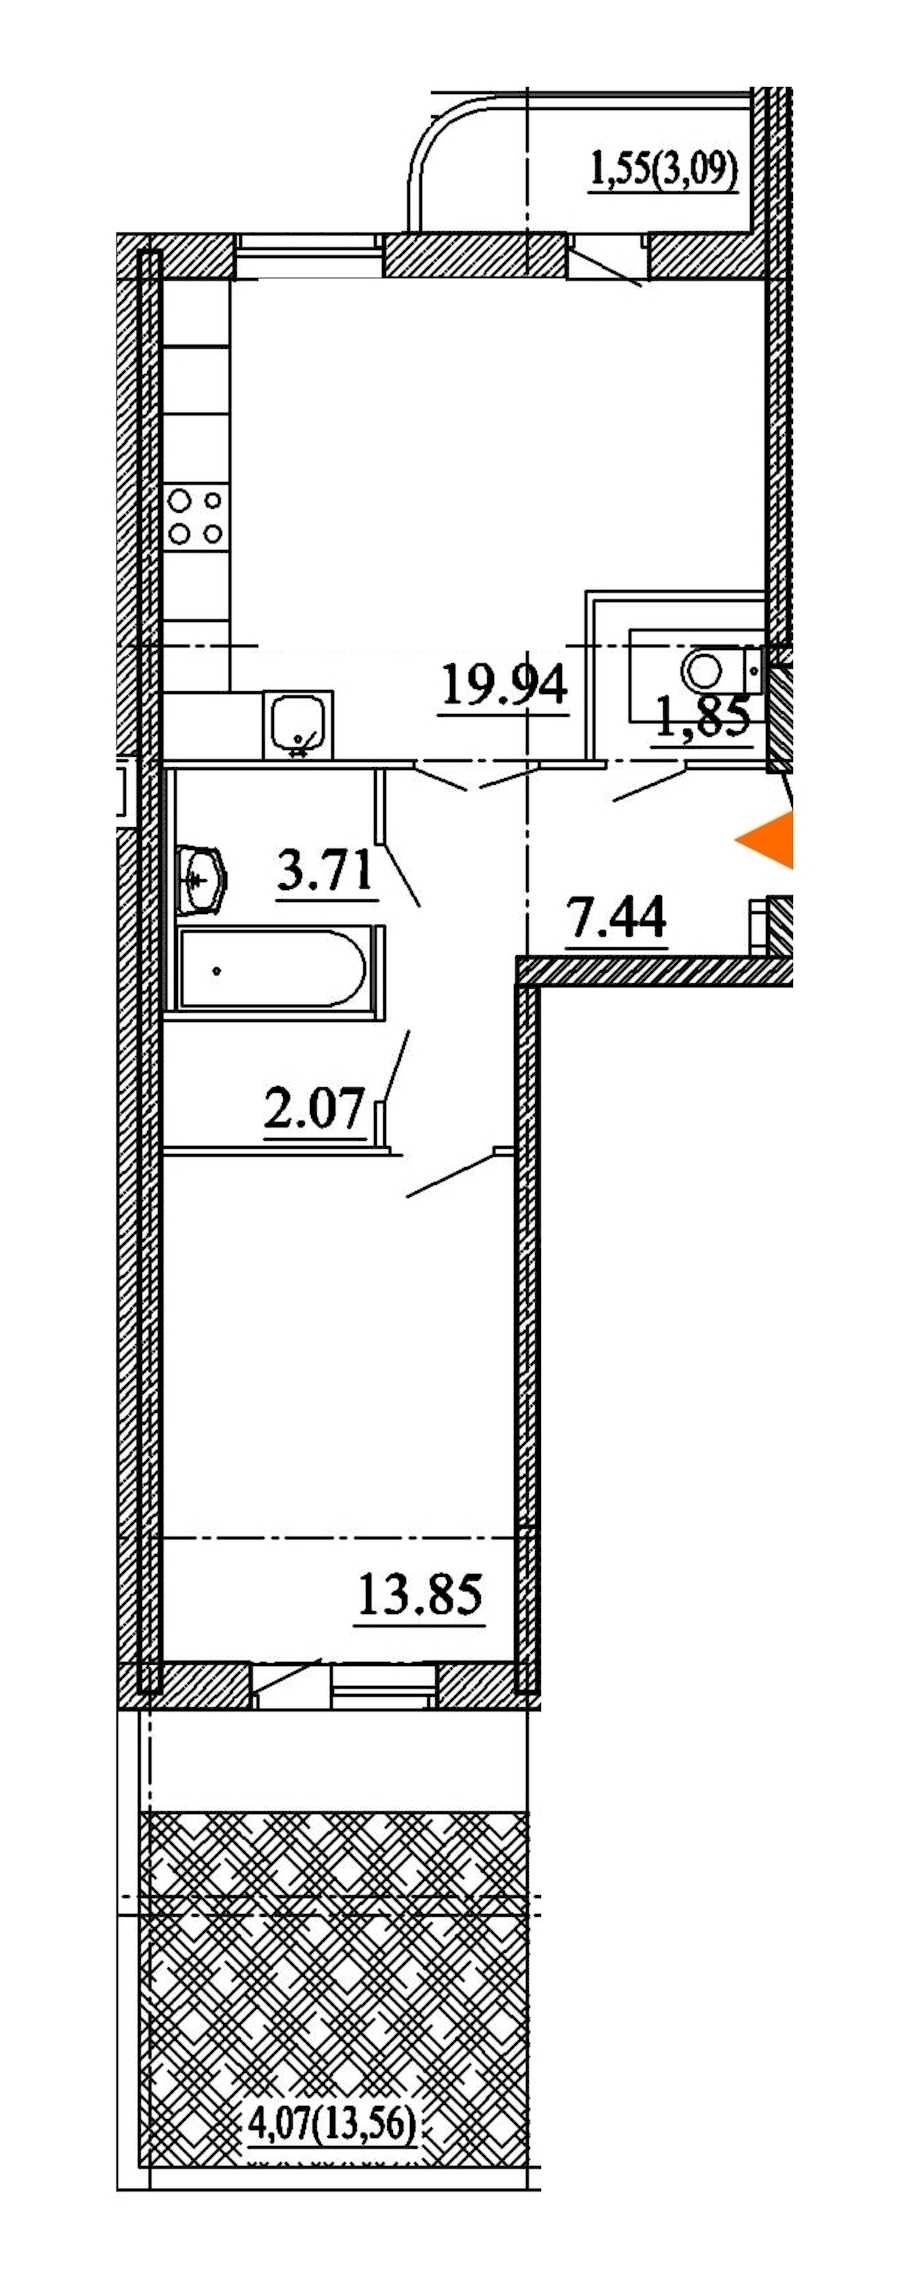 Однокомнатная квартира в Арсенал-1: площадь 54.48 м2 , этаж: 1 – купить в Санкт-Петербурге